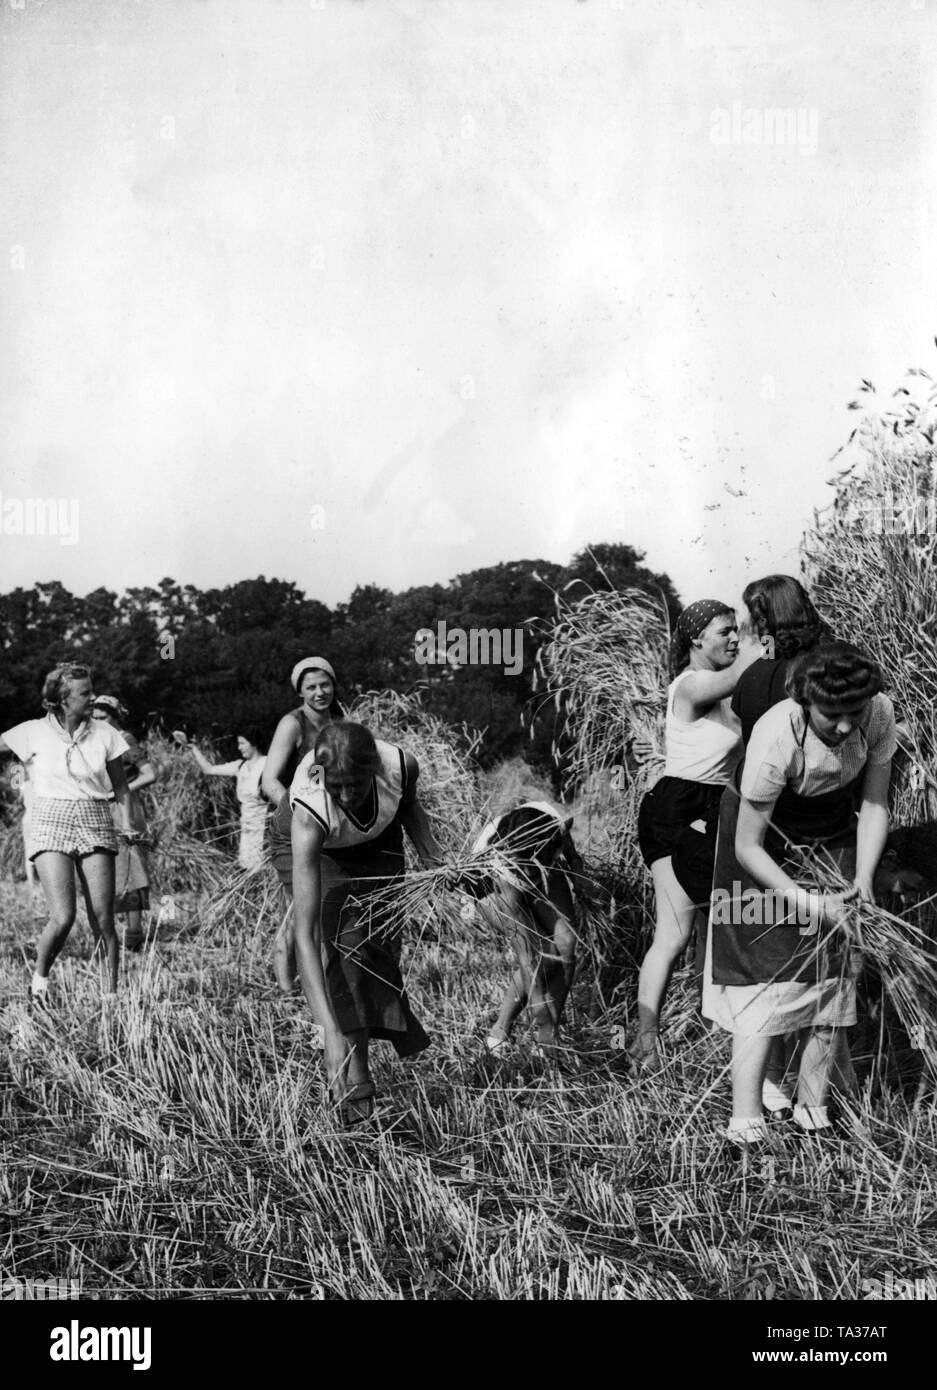 Frauen von der NS-Frauenschaft (National sozialistischen Frauen Liga), verschiedene Jugendgruppen und Deutsches Frauenwerk helfen mit einer Ernte in der Umgebung während des Wochenendes. Hier, ein Roggen der Ernte in einem Feld in Berlin. Stockfoto